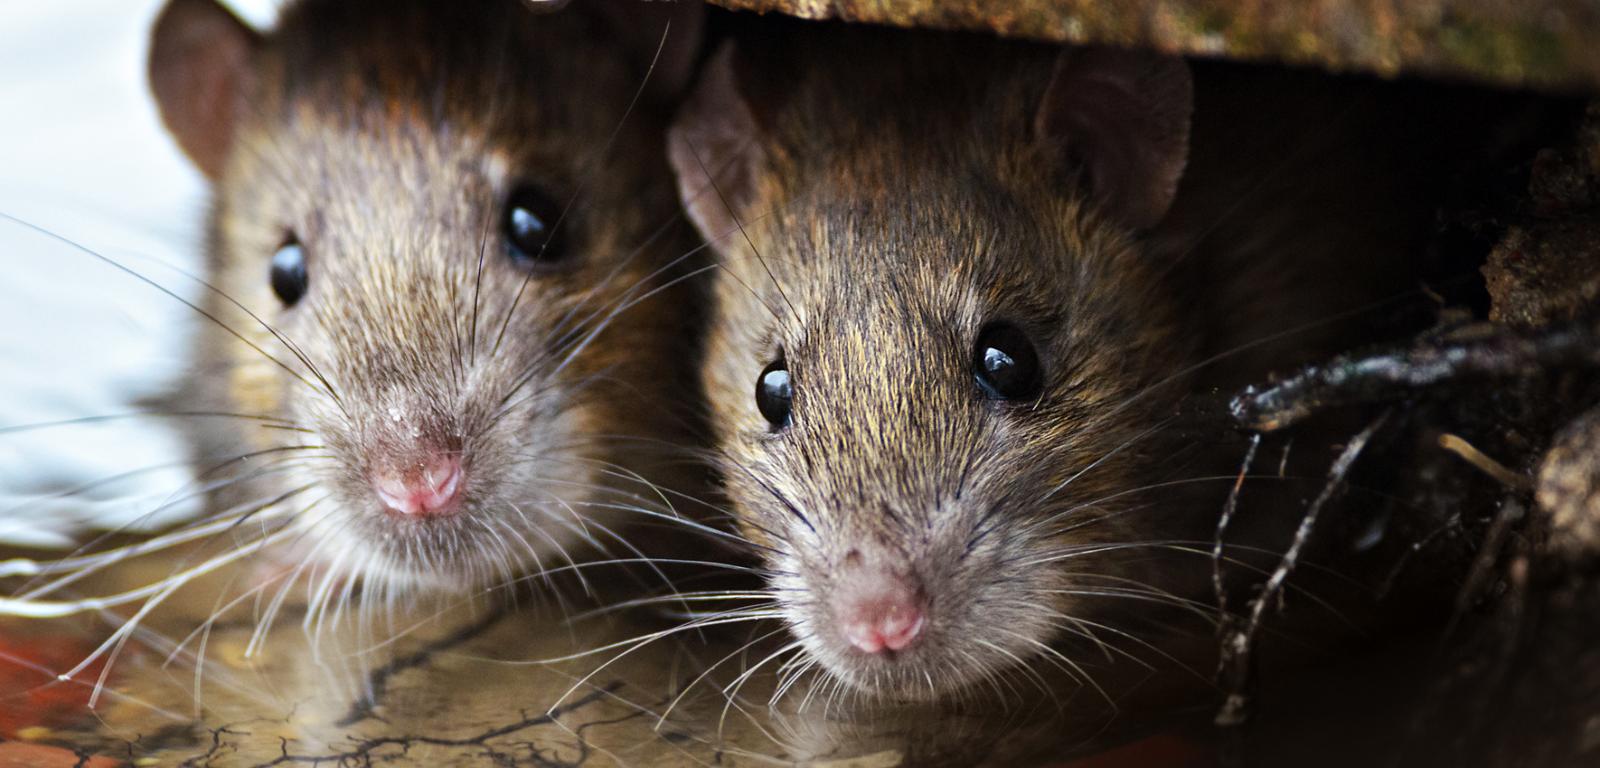 Według badaczy komunikacja ultradźwiękowa chroni szczury przed drapieżnikami, które nie są w stanie usłyszeć wydawanych przez gryzonie odgłosów.